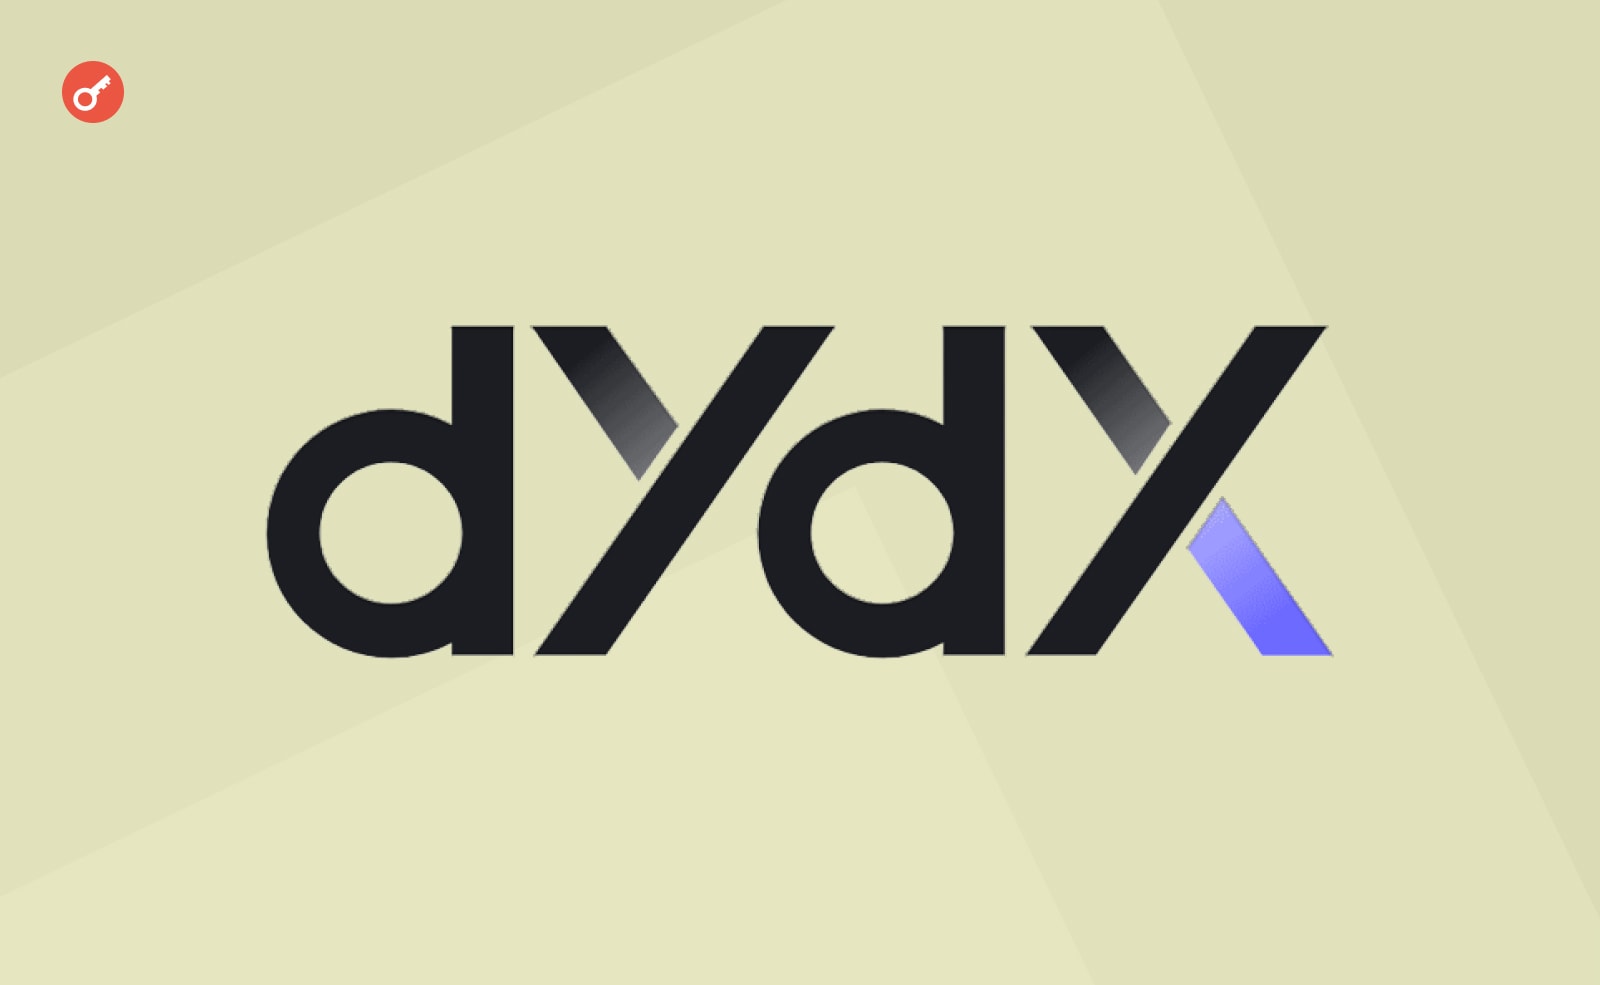 Біржа dYdX відклала розлок токенів для інвесторів і ком’юніті. Головний колаж новини.